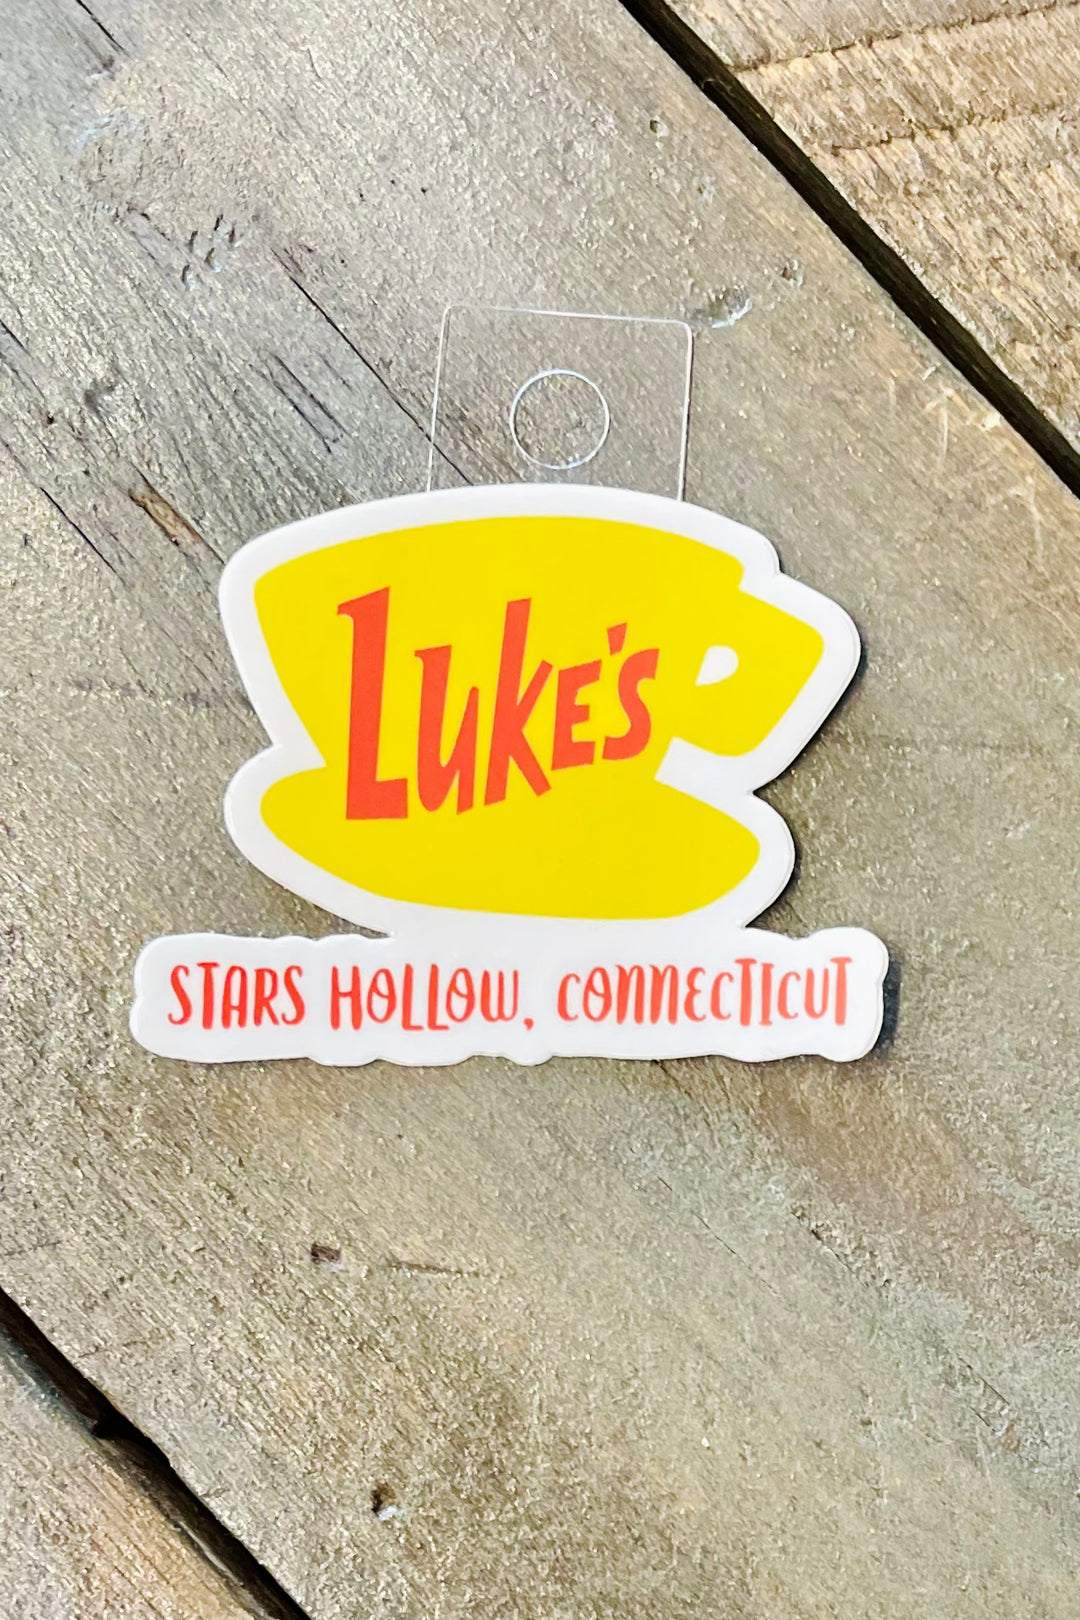 Luke's Diner Vinyl Sticker